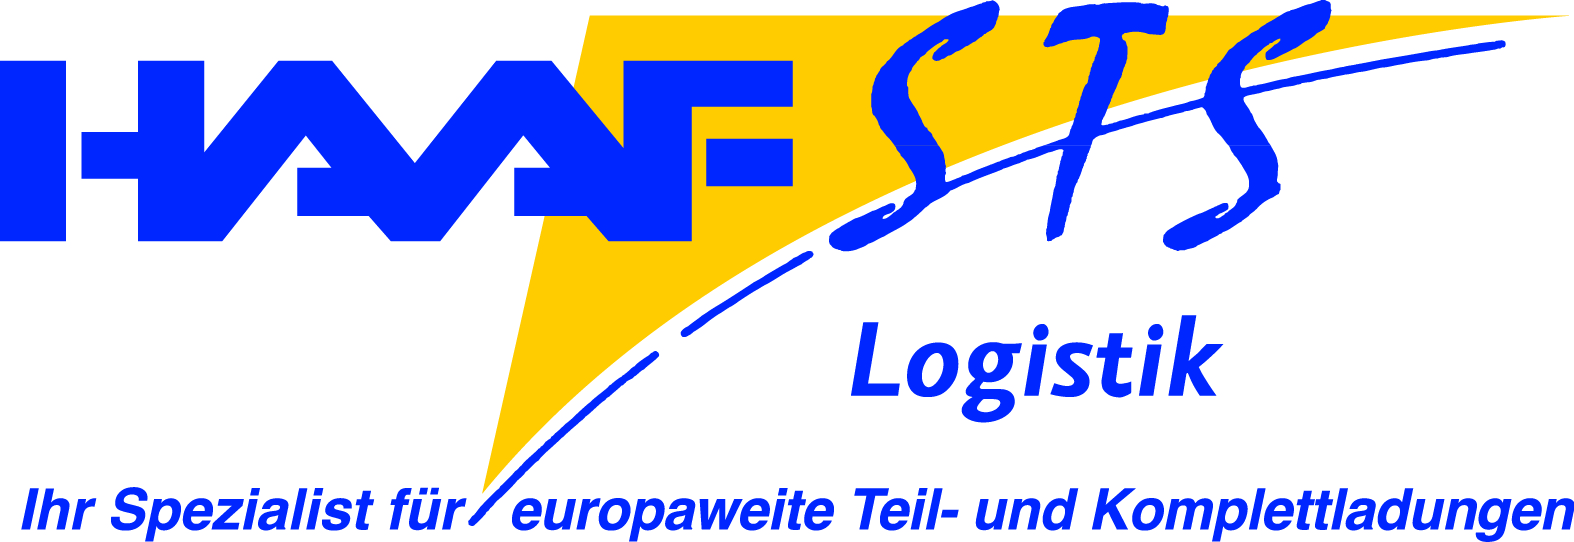 HAAF STS Logistik GmbH